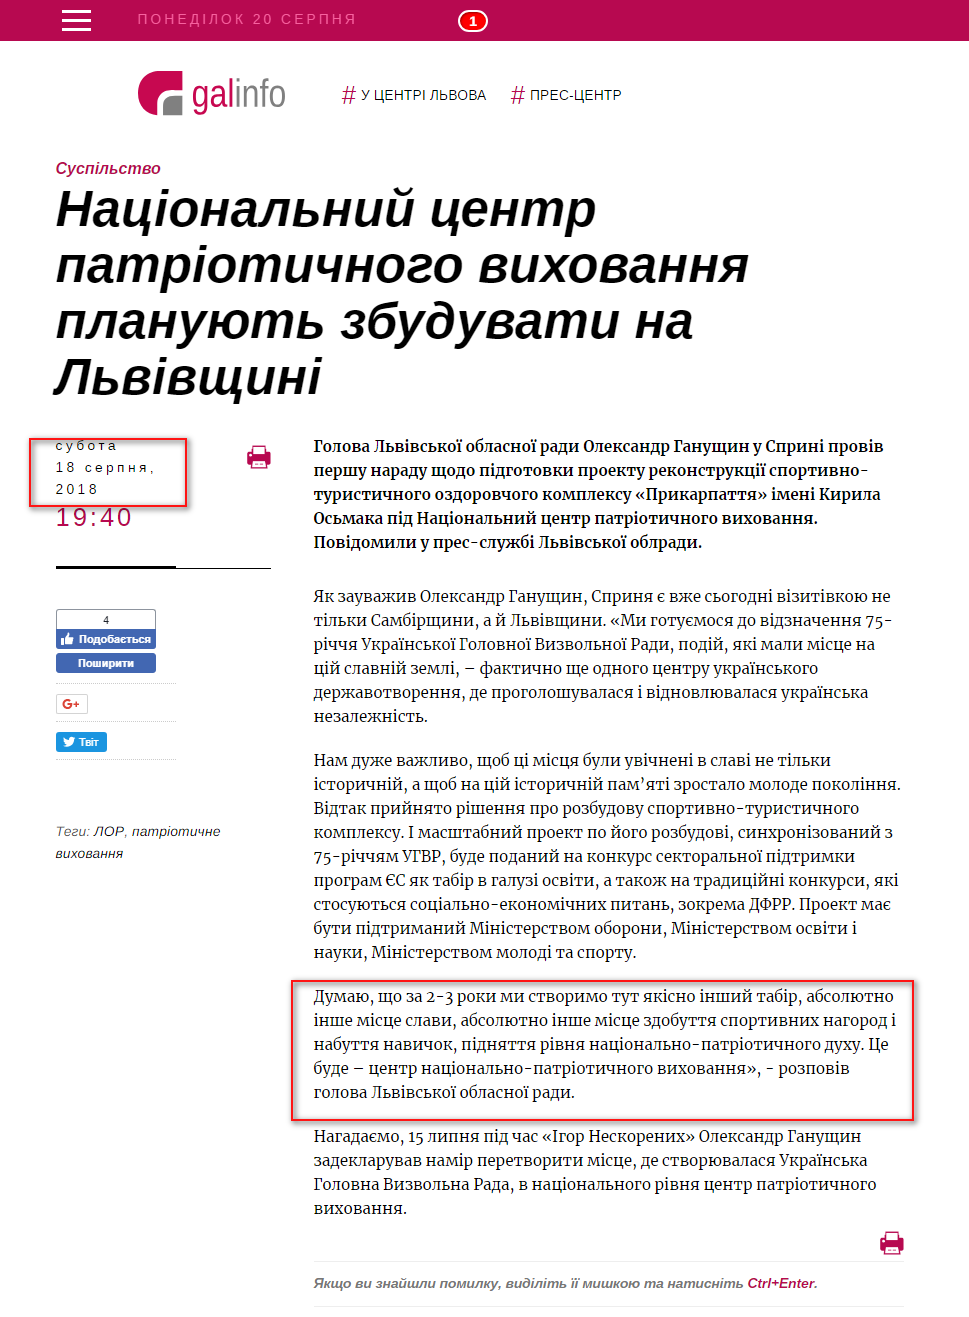 https://galinfo.com.ua/news/natsionalnyy_tsentr_patriotychnogo_vyhovannya_planuyut_zbuduvaty_na_lvivshchyni_293664.html